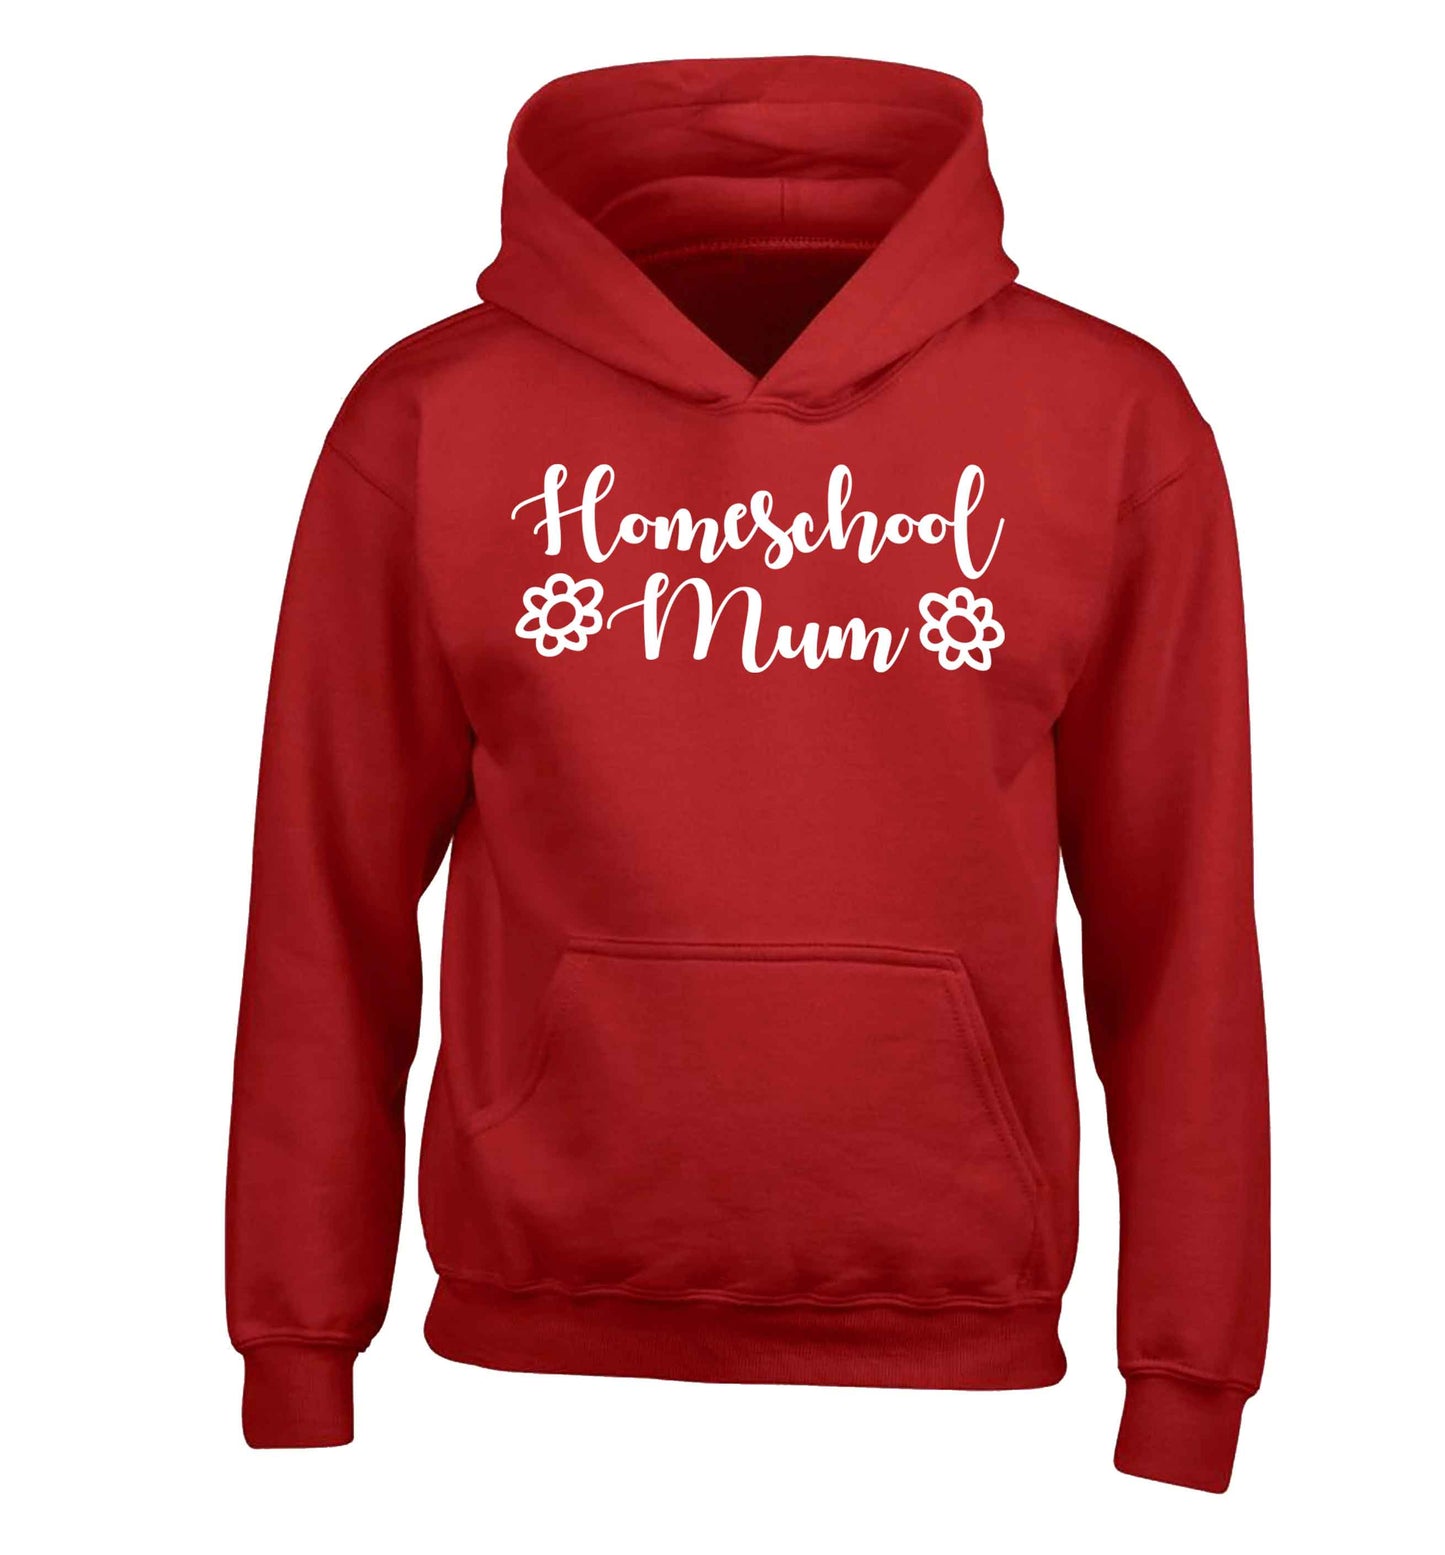 Homeschool mum children's red hoodie 12-13 Years